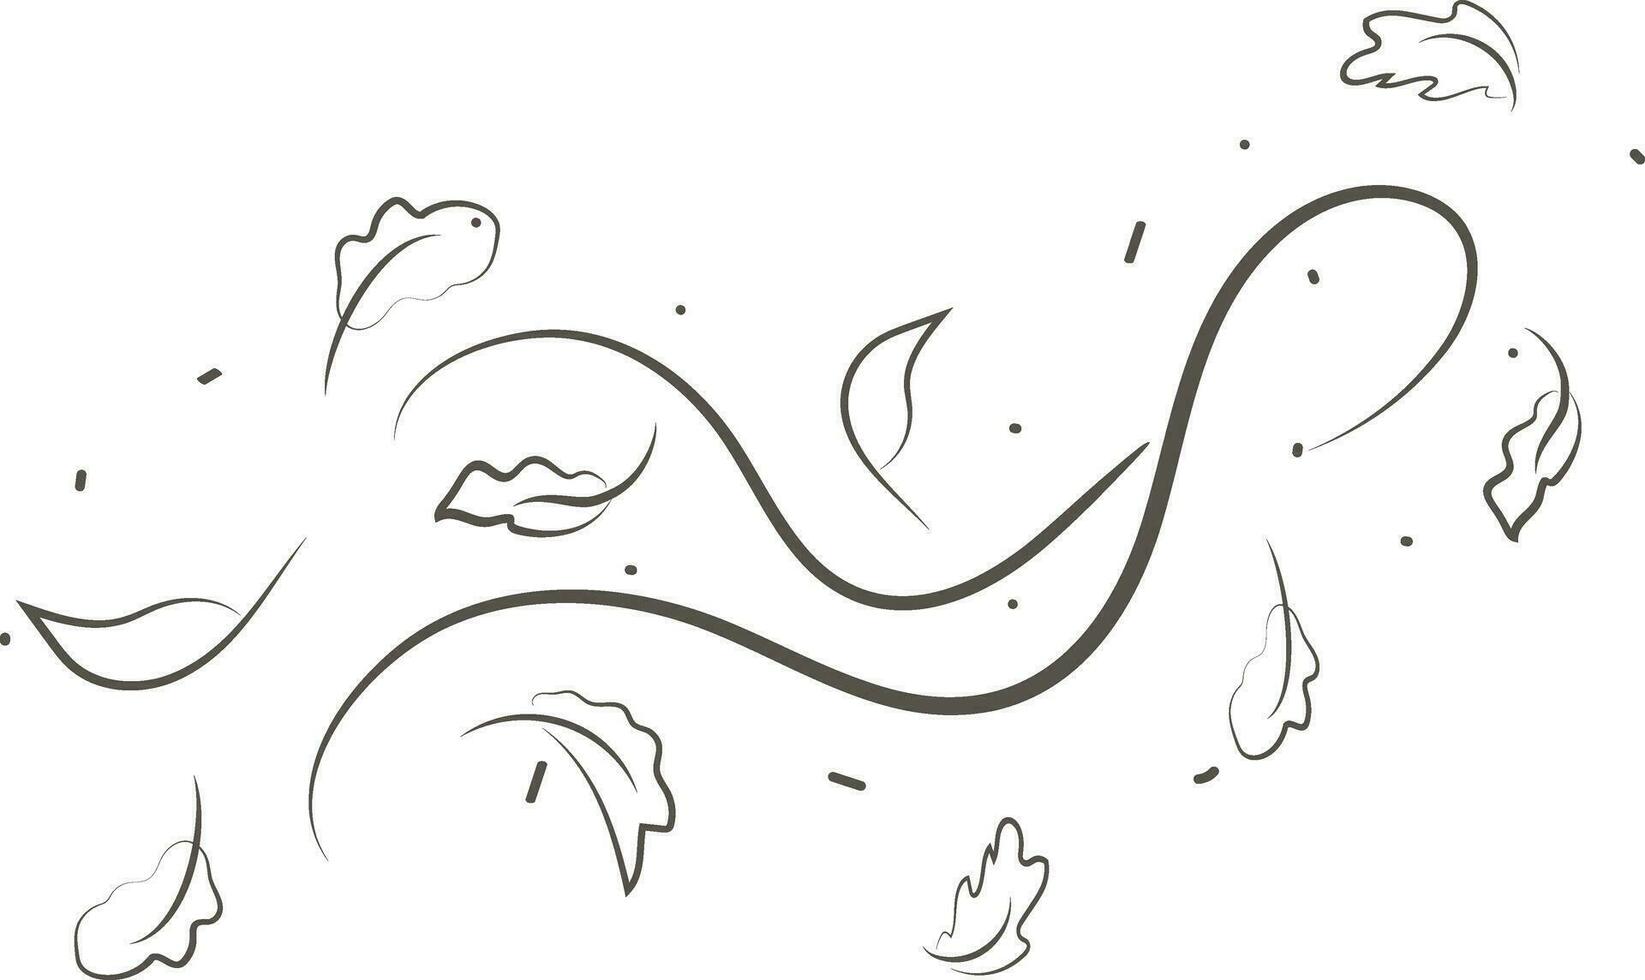 esboço desenhando do uma respiração do vento.vento golpe conjunto dentro linha estilo.onda fluindo ilustração com mão desenhado rabisco desenho animado estilo. vetor